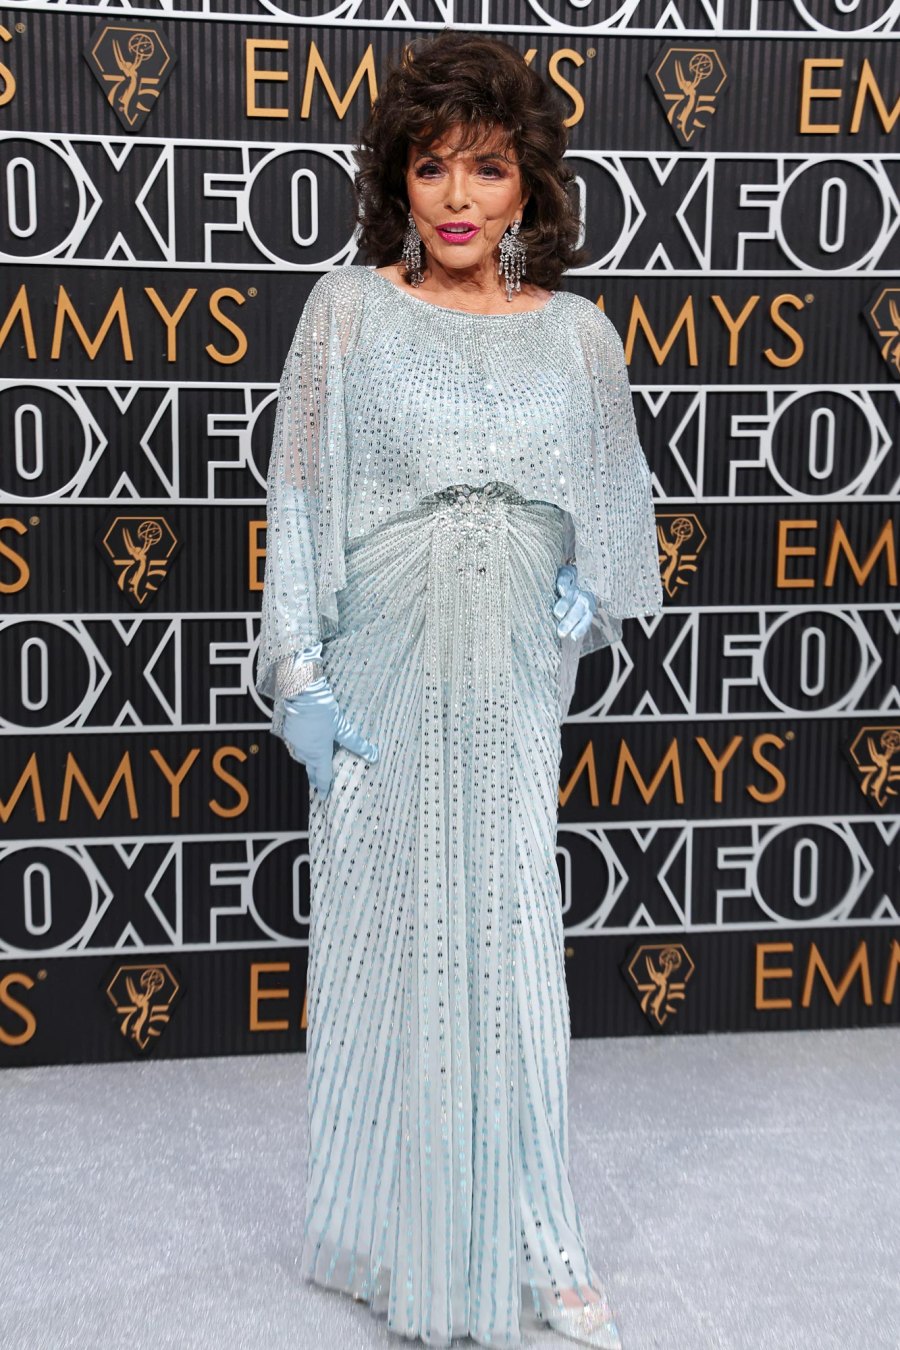 Emmy Awards 2023 Red Carpet Arrivals 666 Joan Collins